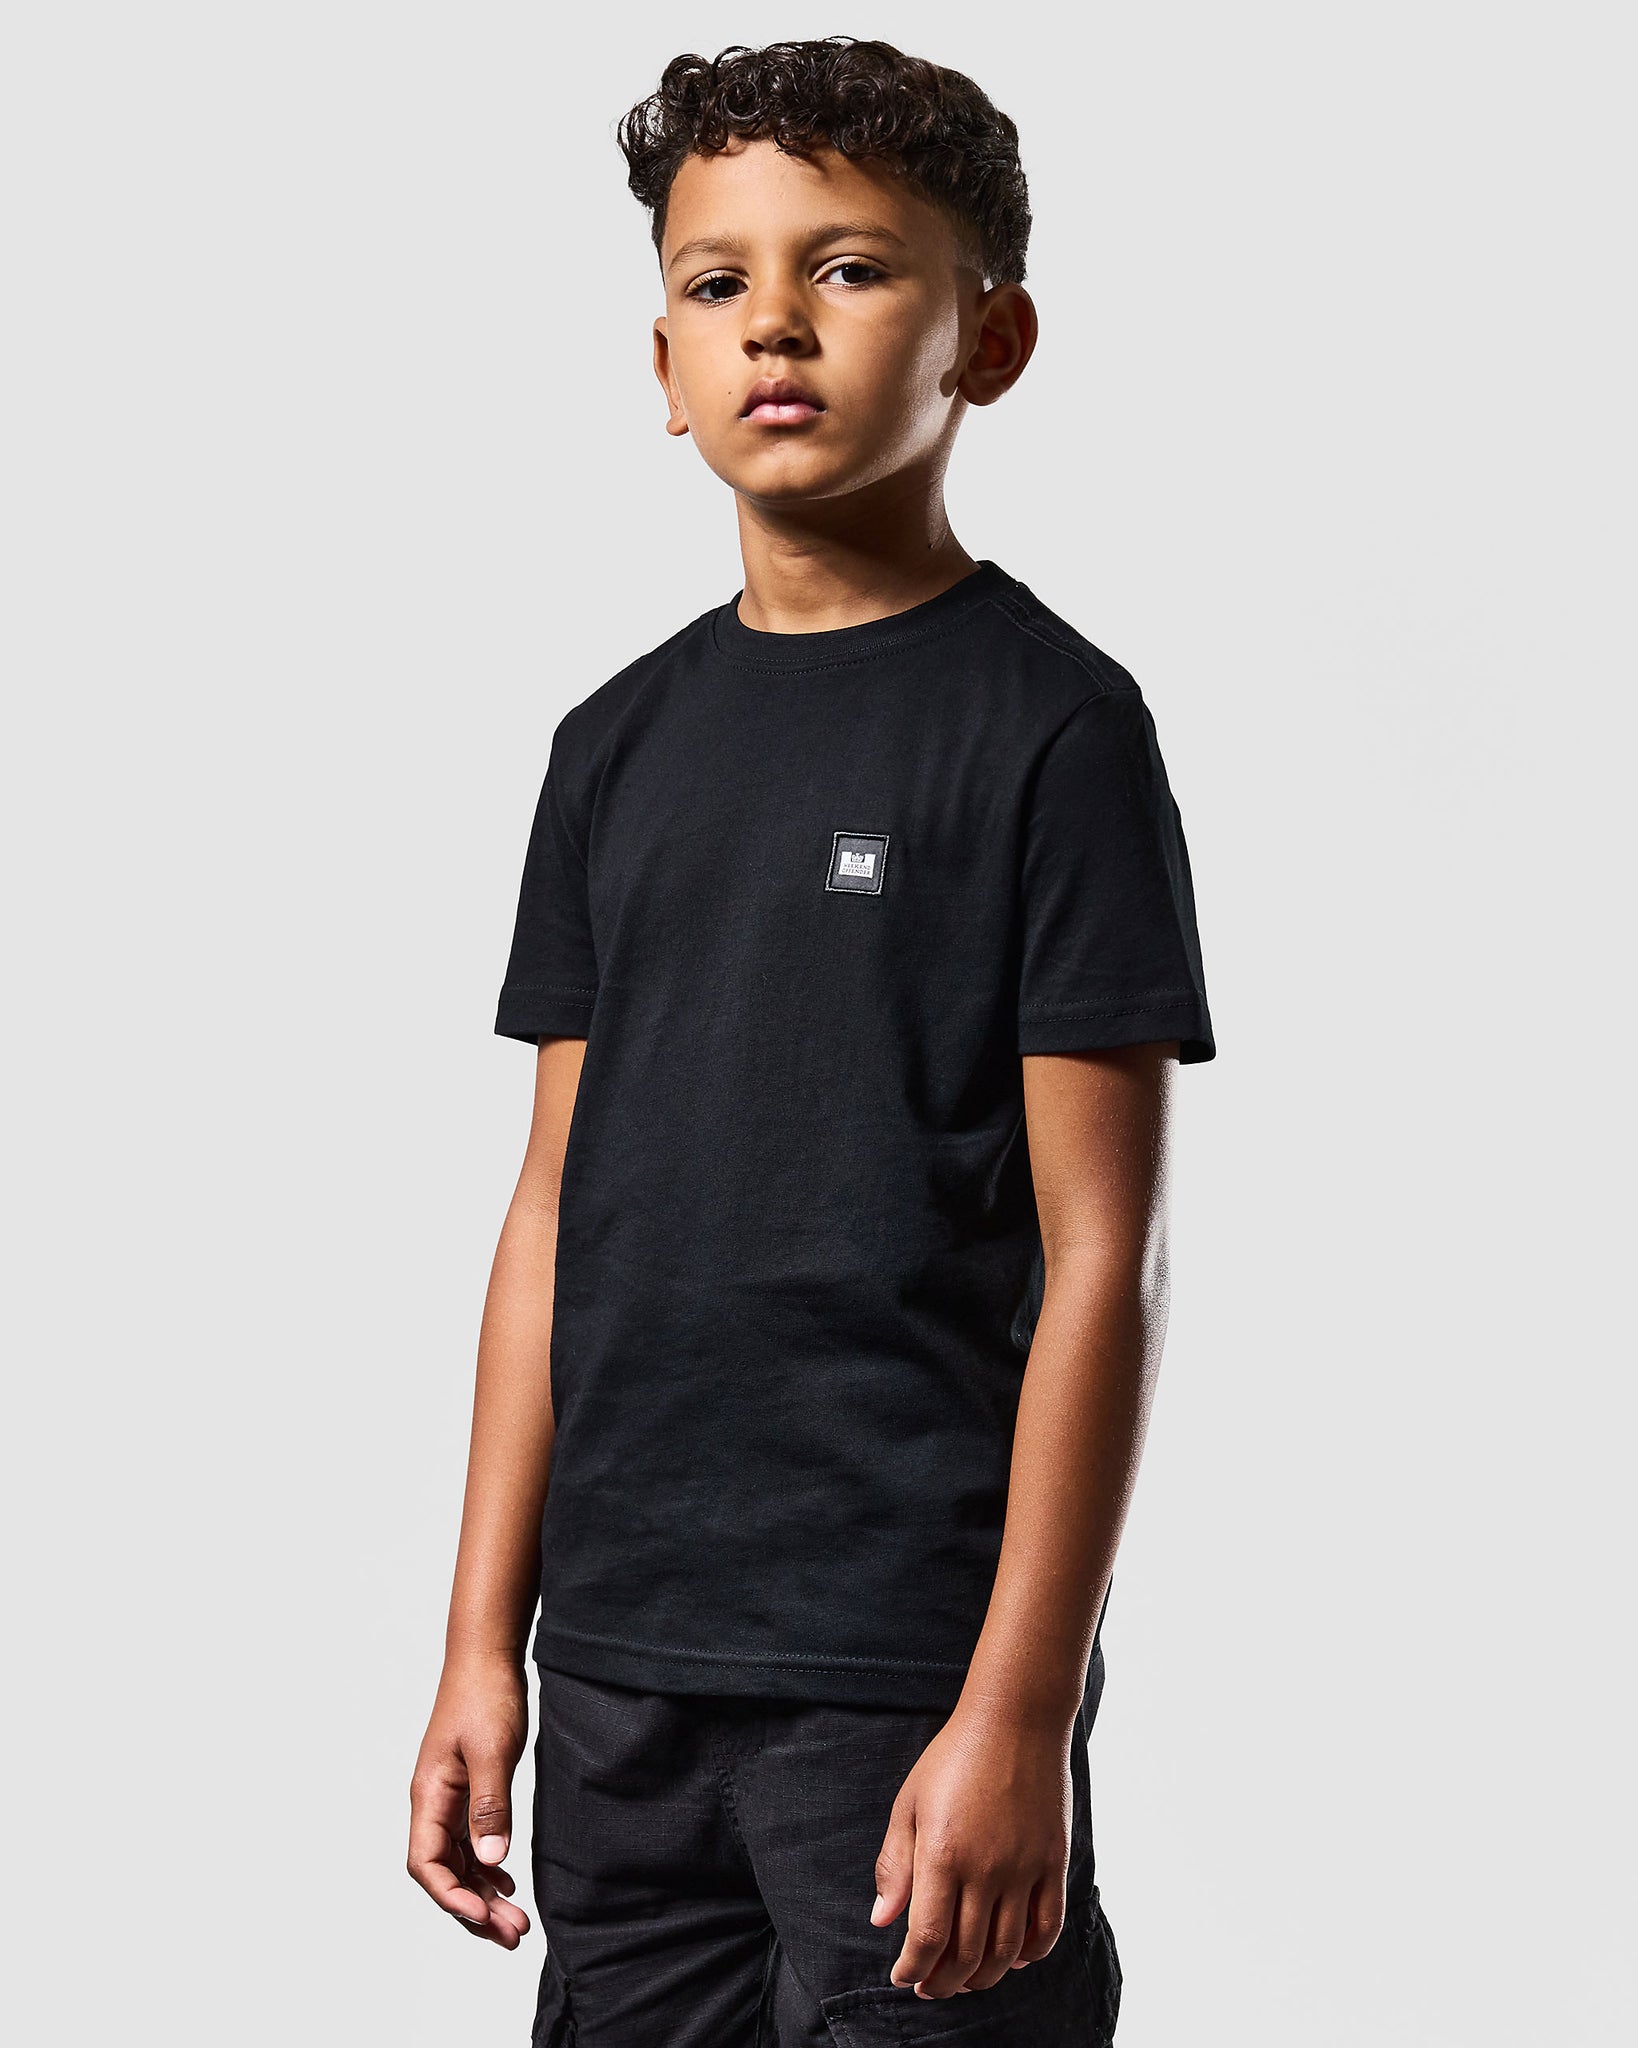 Kids Cannon Beach T-Shirt Black